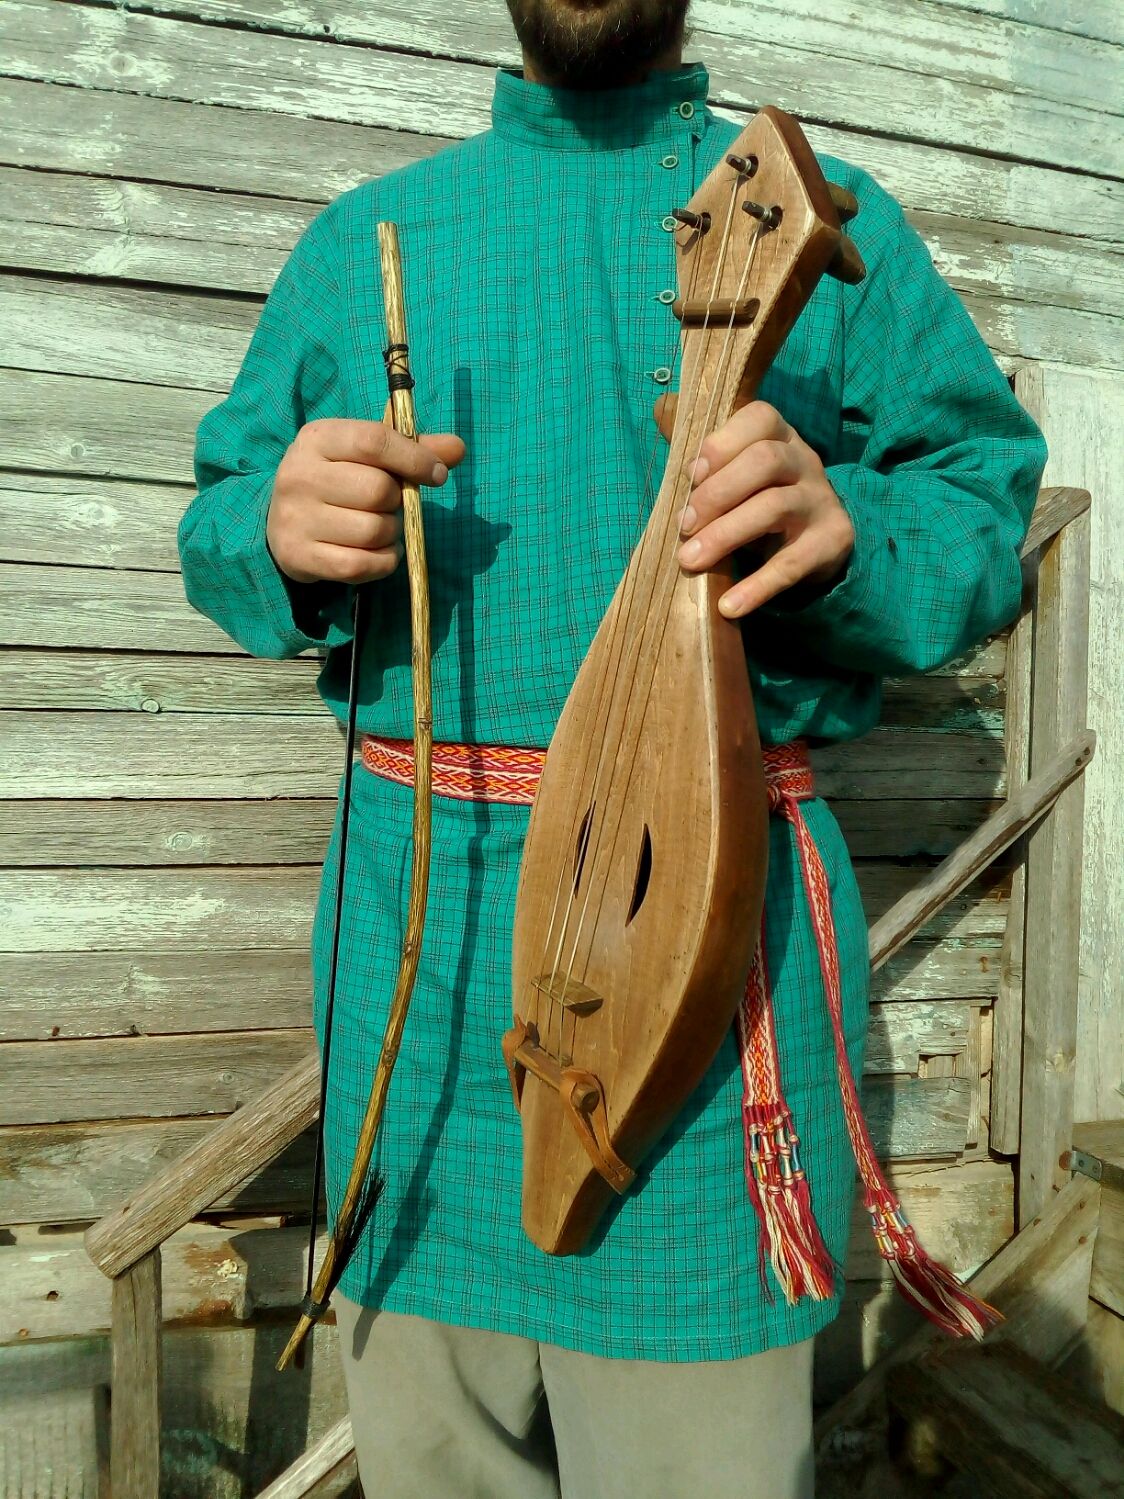 русские народные музыкальные инструменты фото